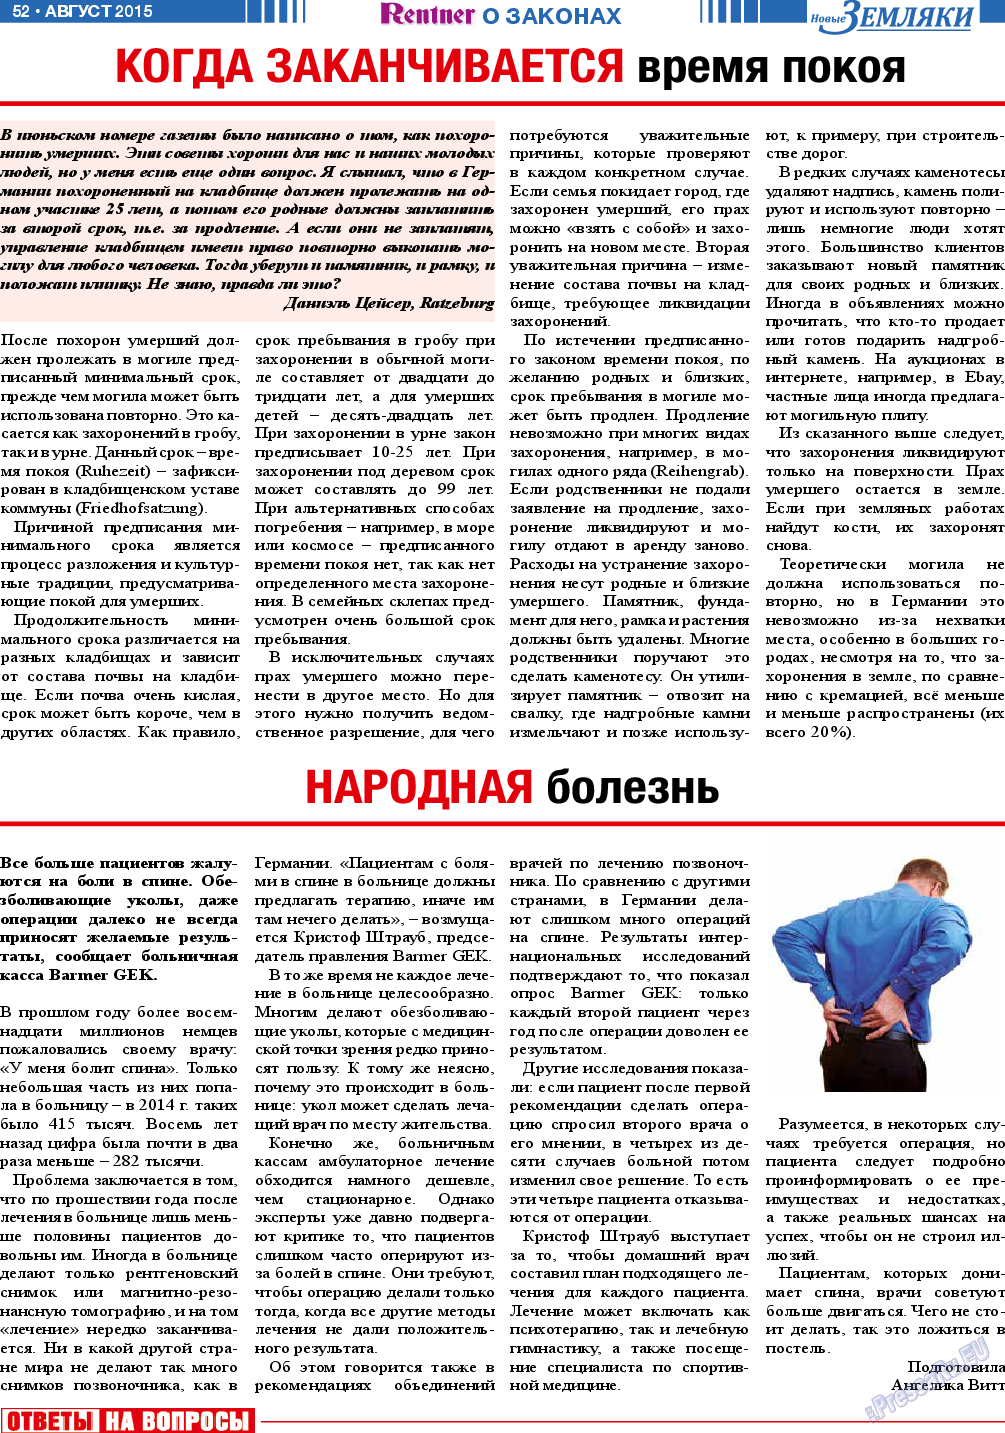 Новые Земляки, газета. 2015 №8 стр.52